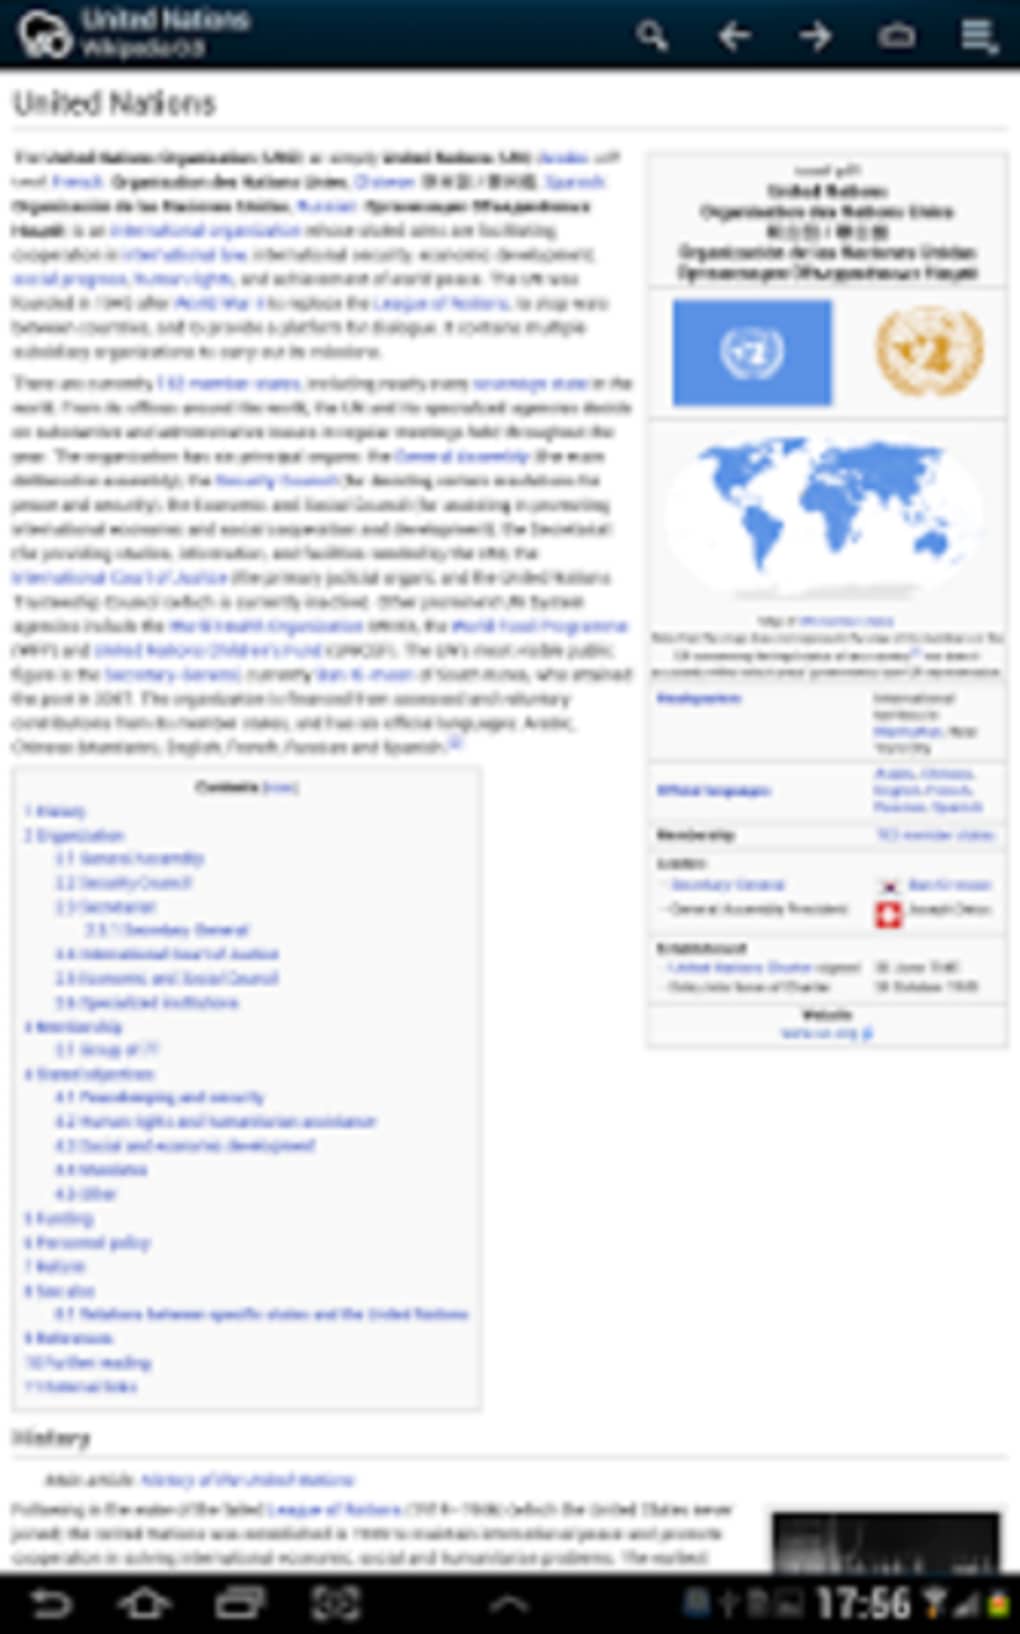 Скачать Kiwix — Википедию оффлайн для компьютера, Android и iPhone бесплатно